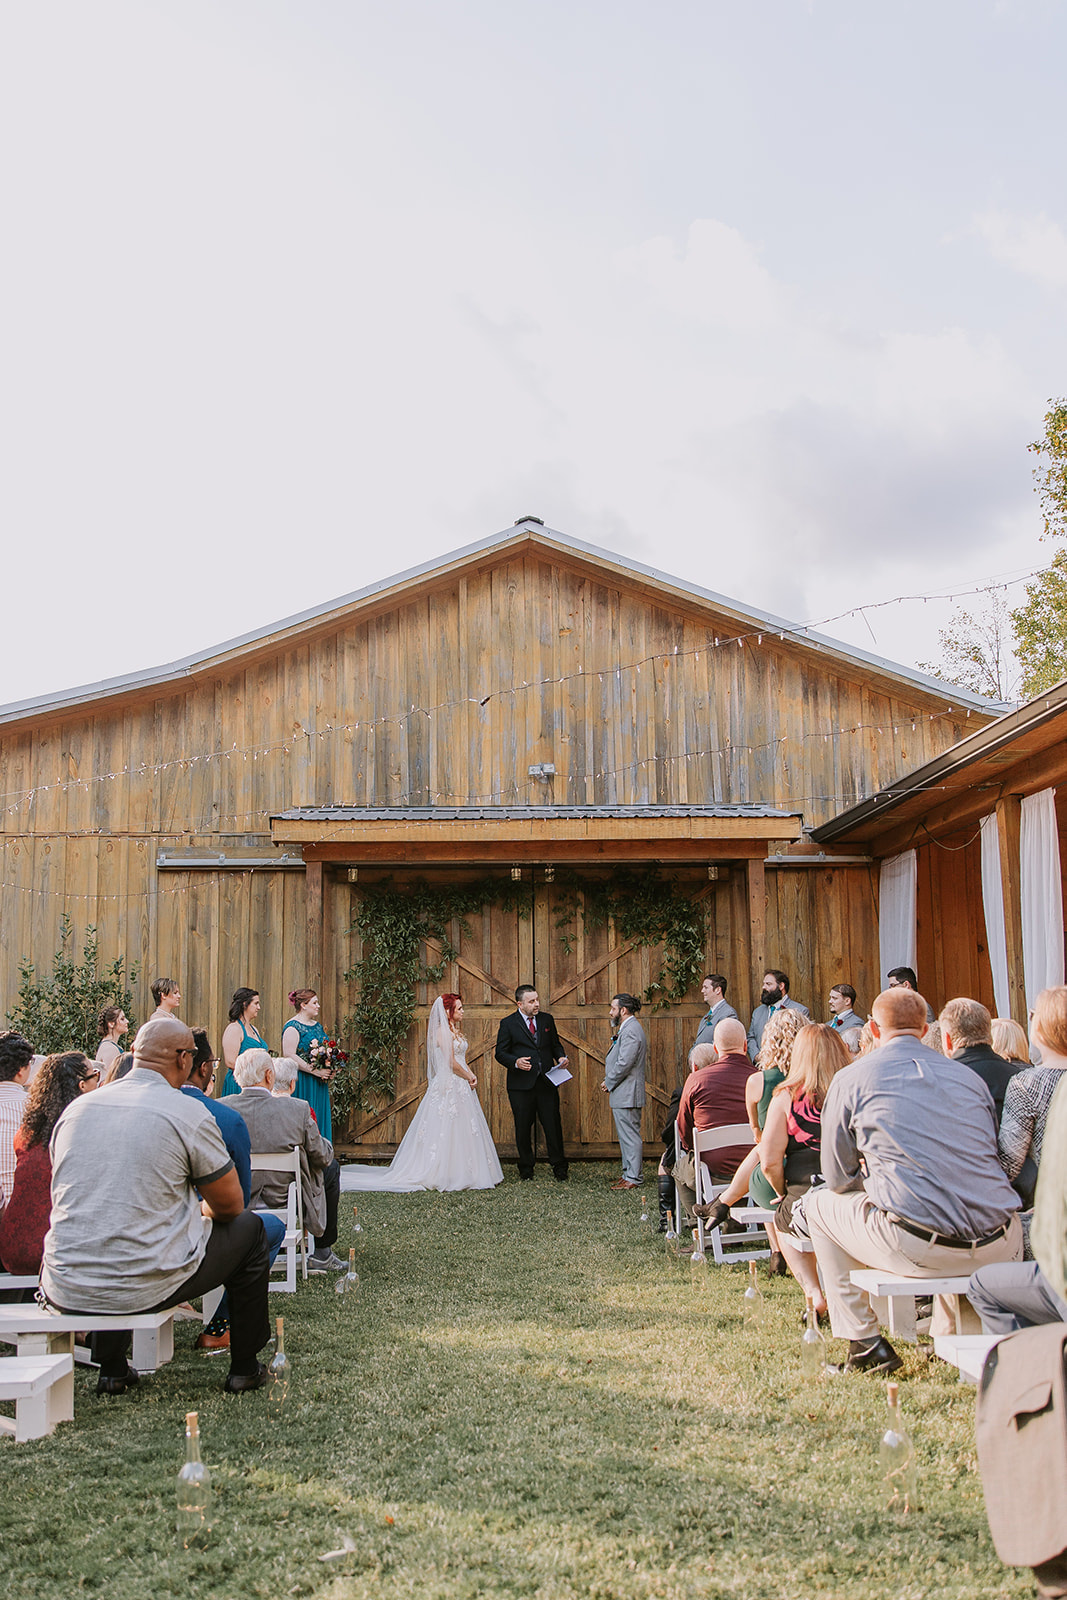 Outdoor ceremony at North Georgia Barn Wedding Venue